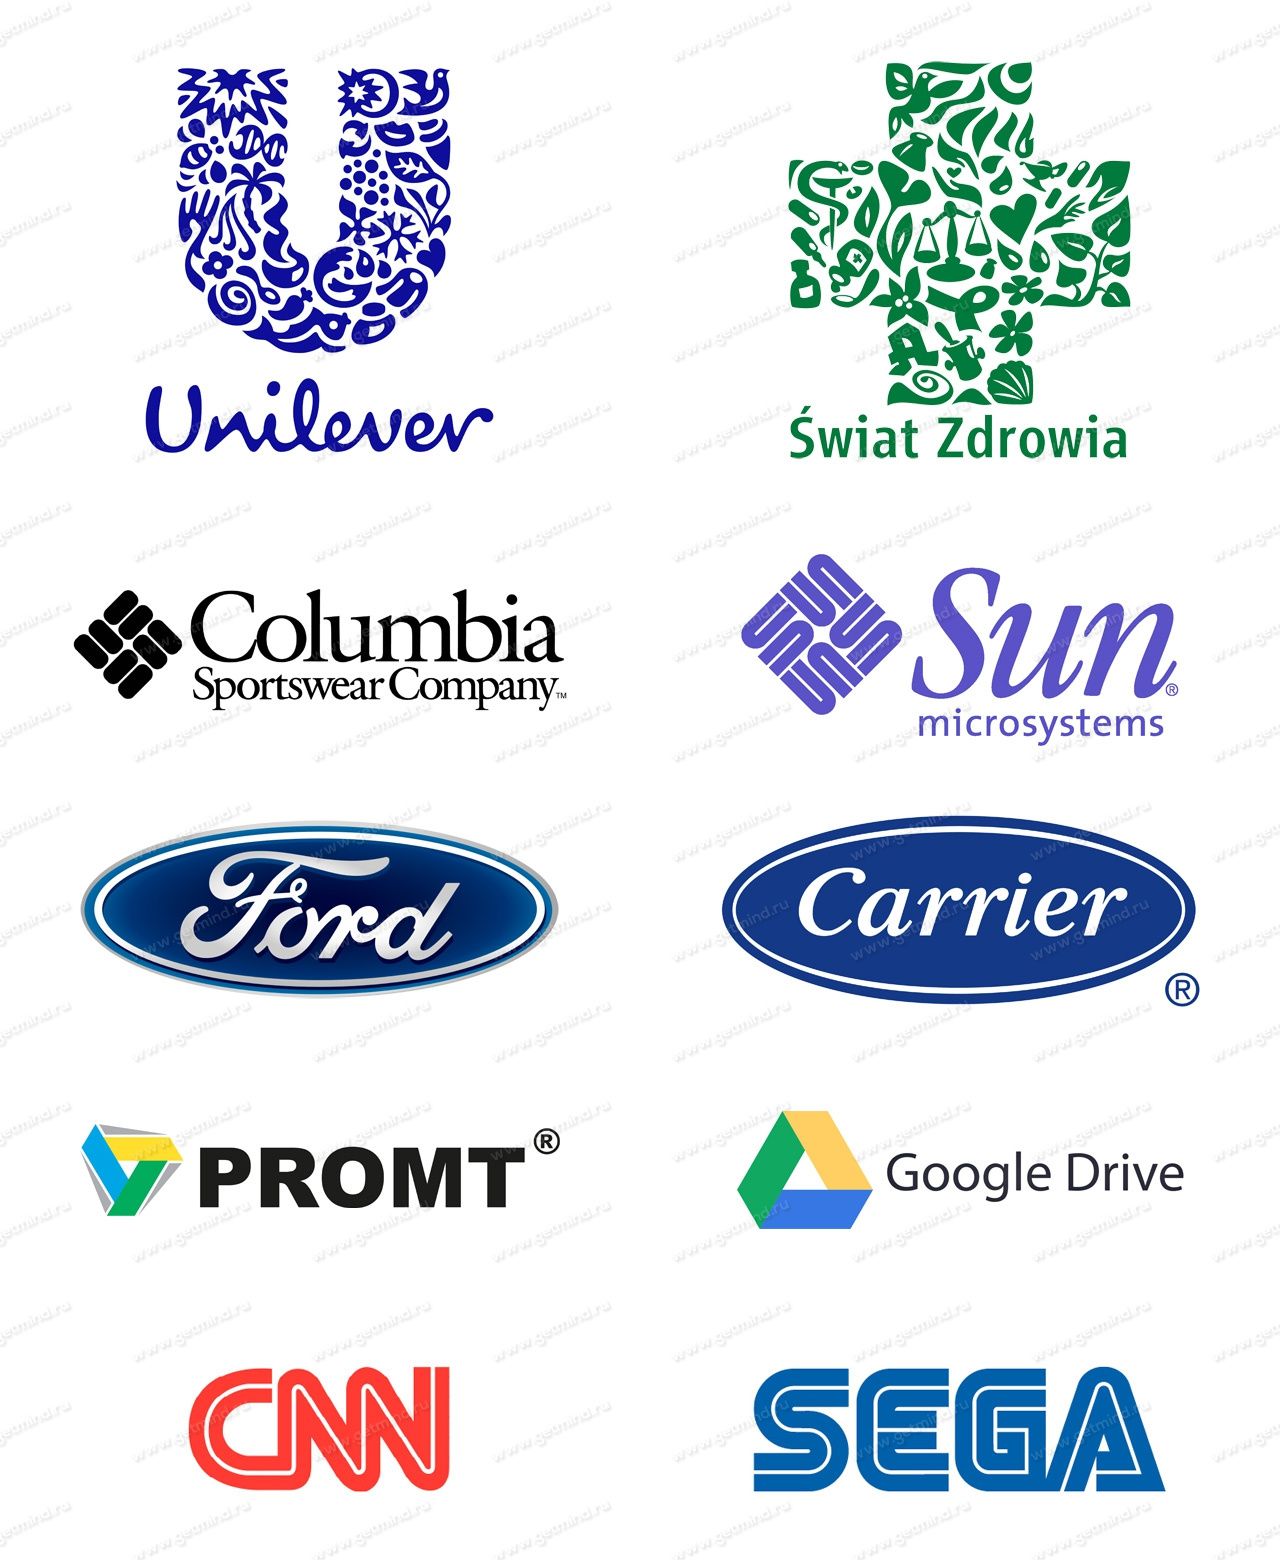 Фирмы со счетом. Эмблема фирмы. Известные логотипы. Логотипы фирм. Эмблемы известных брендов.